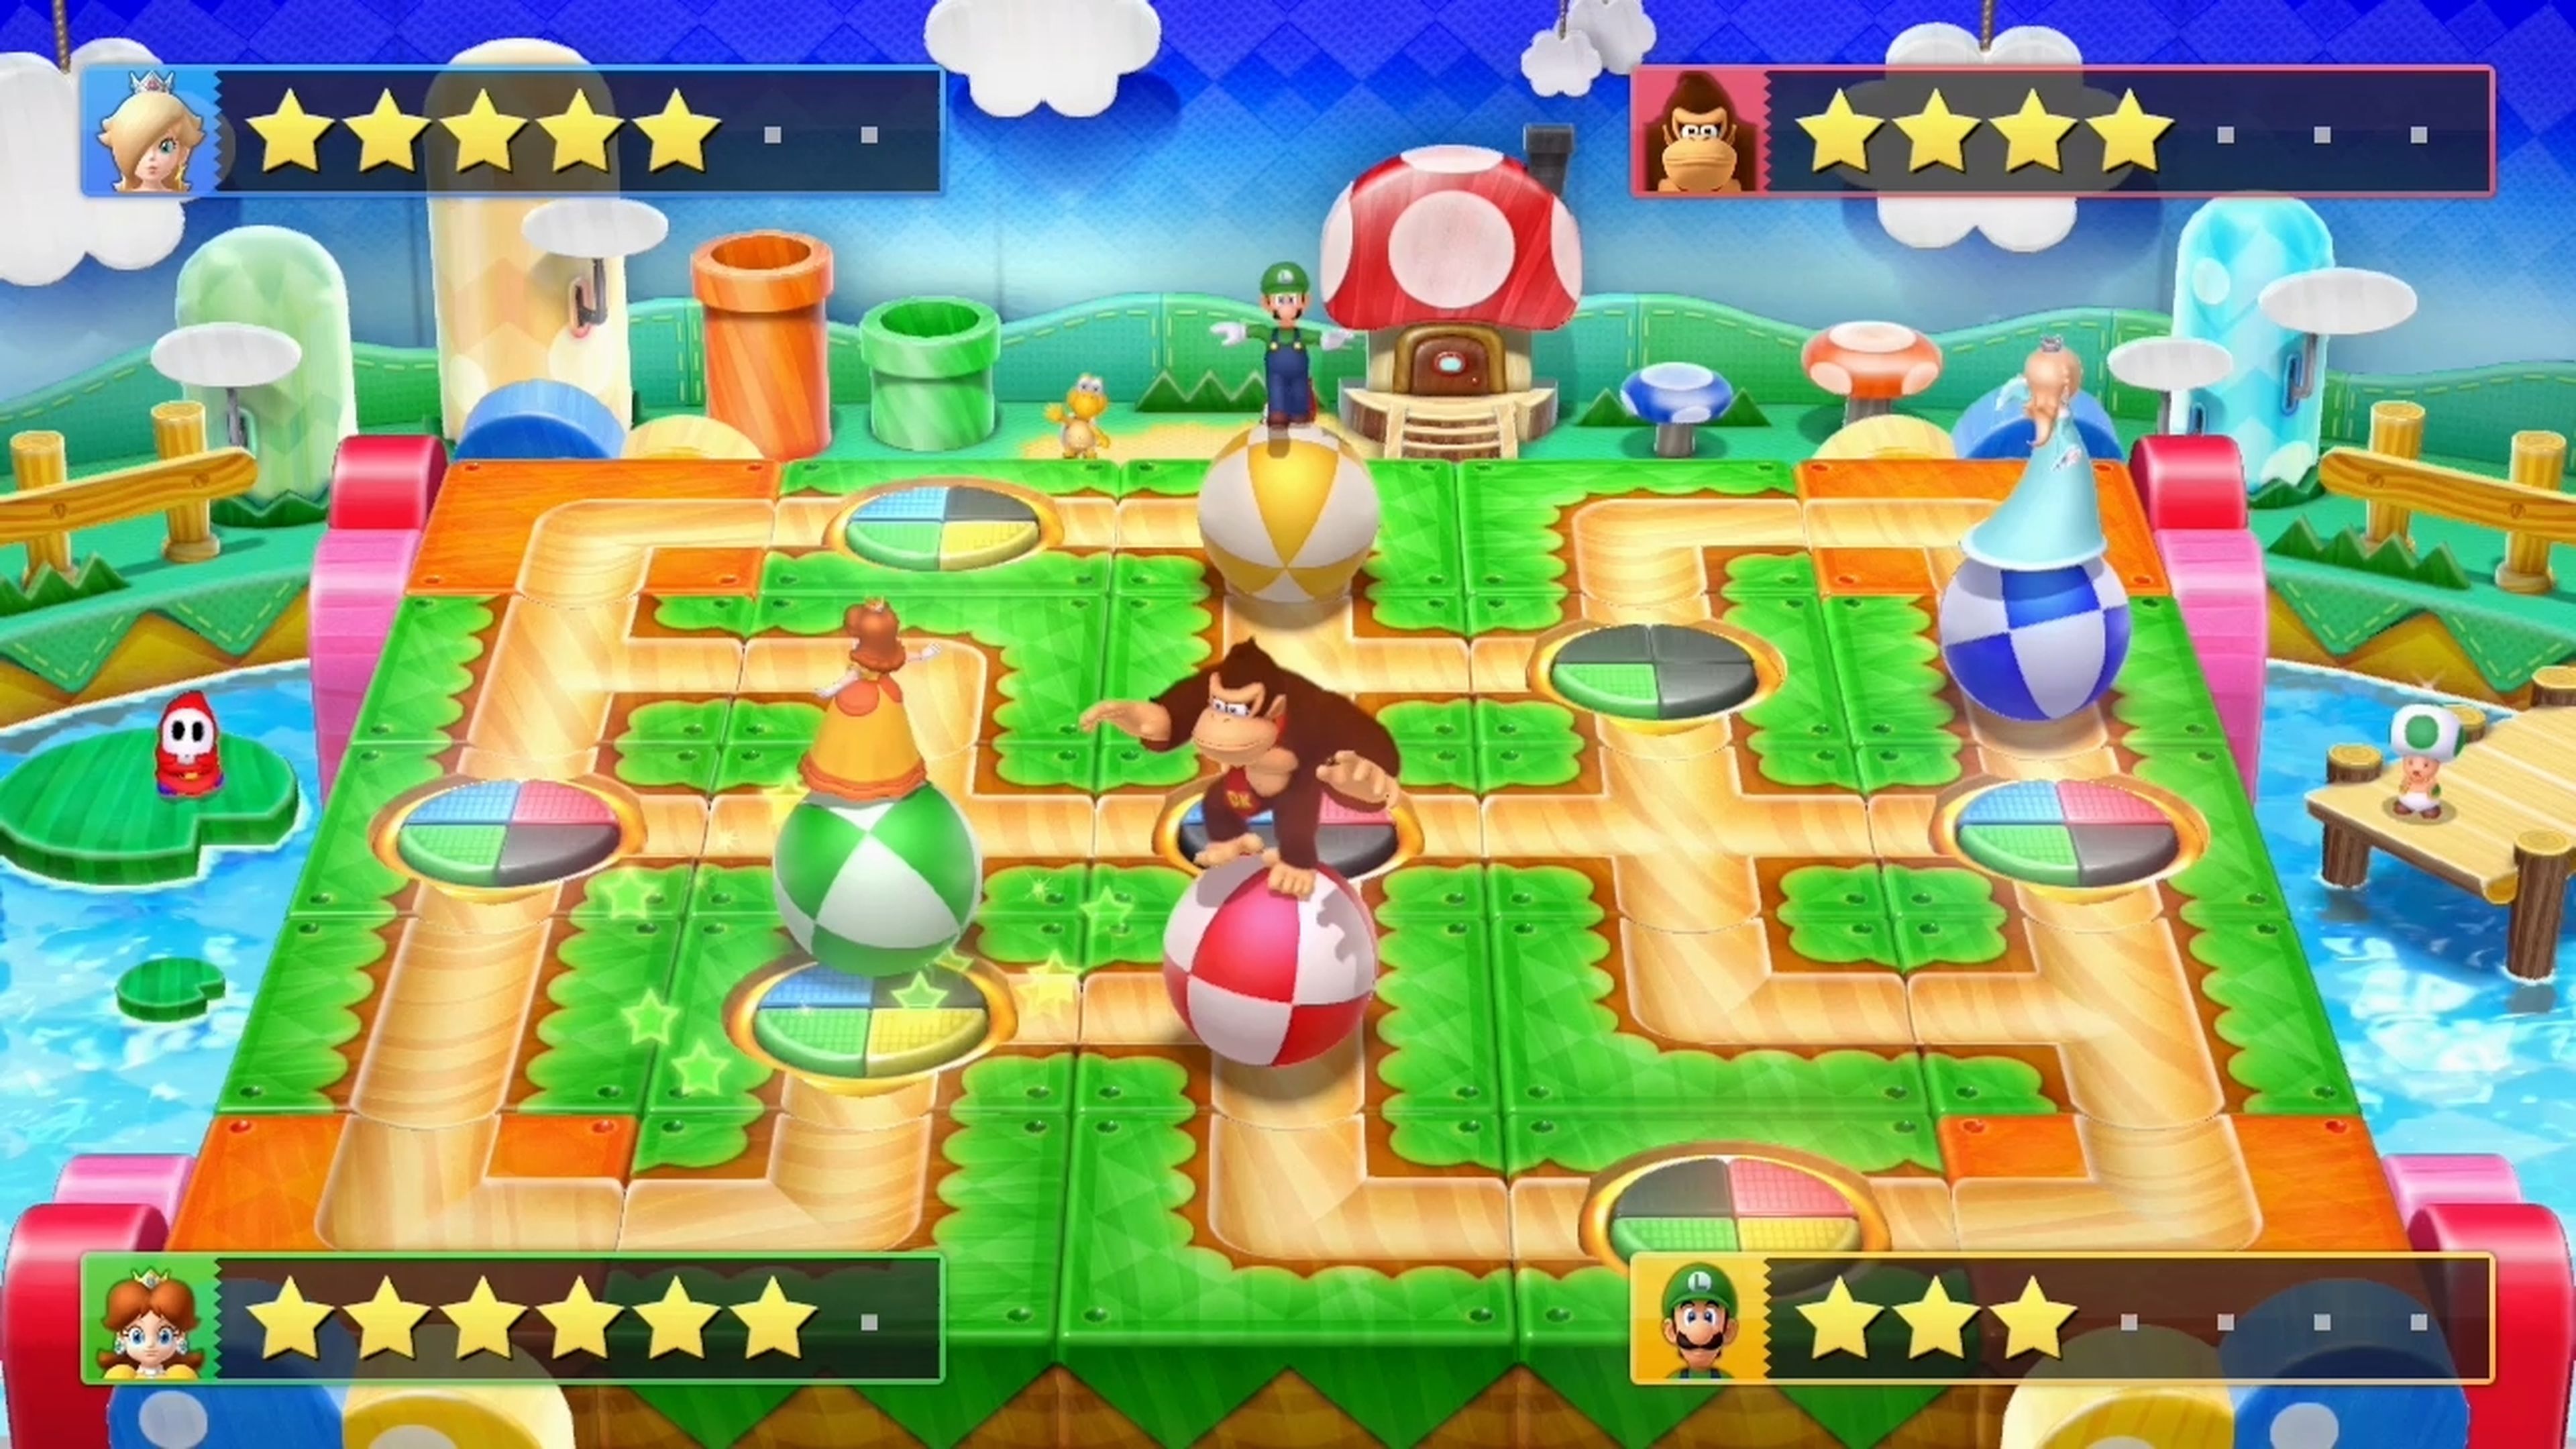 Análisis de Mario Party 10